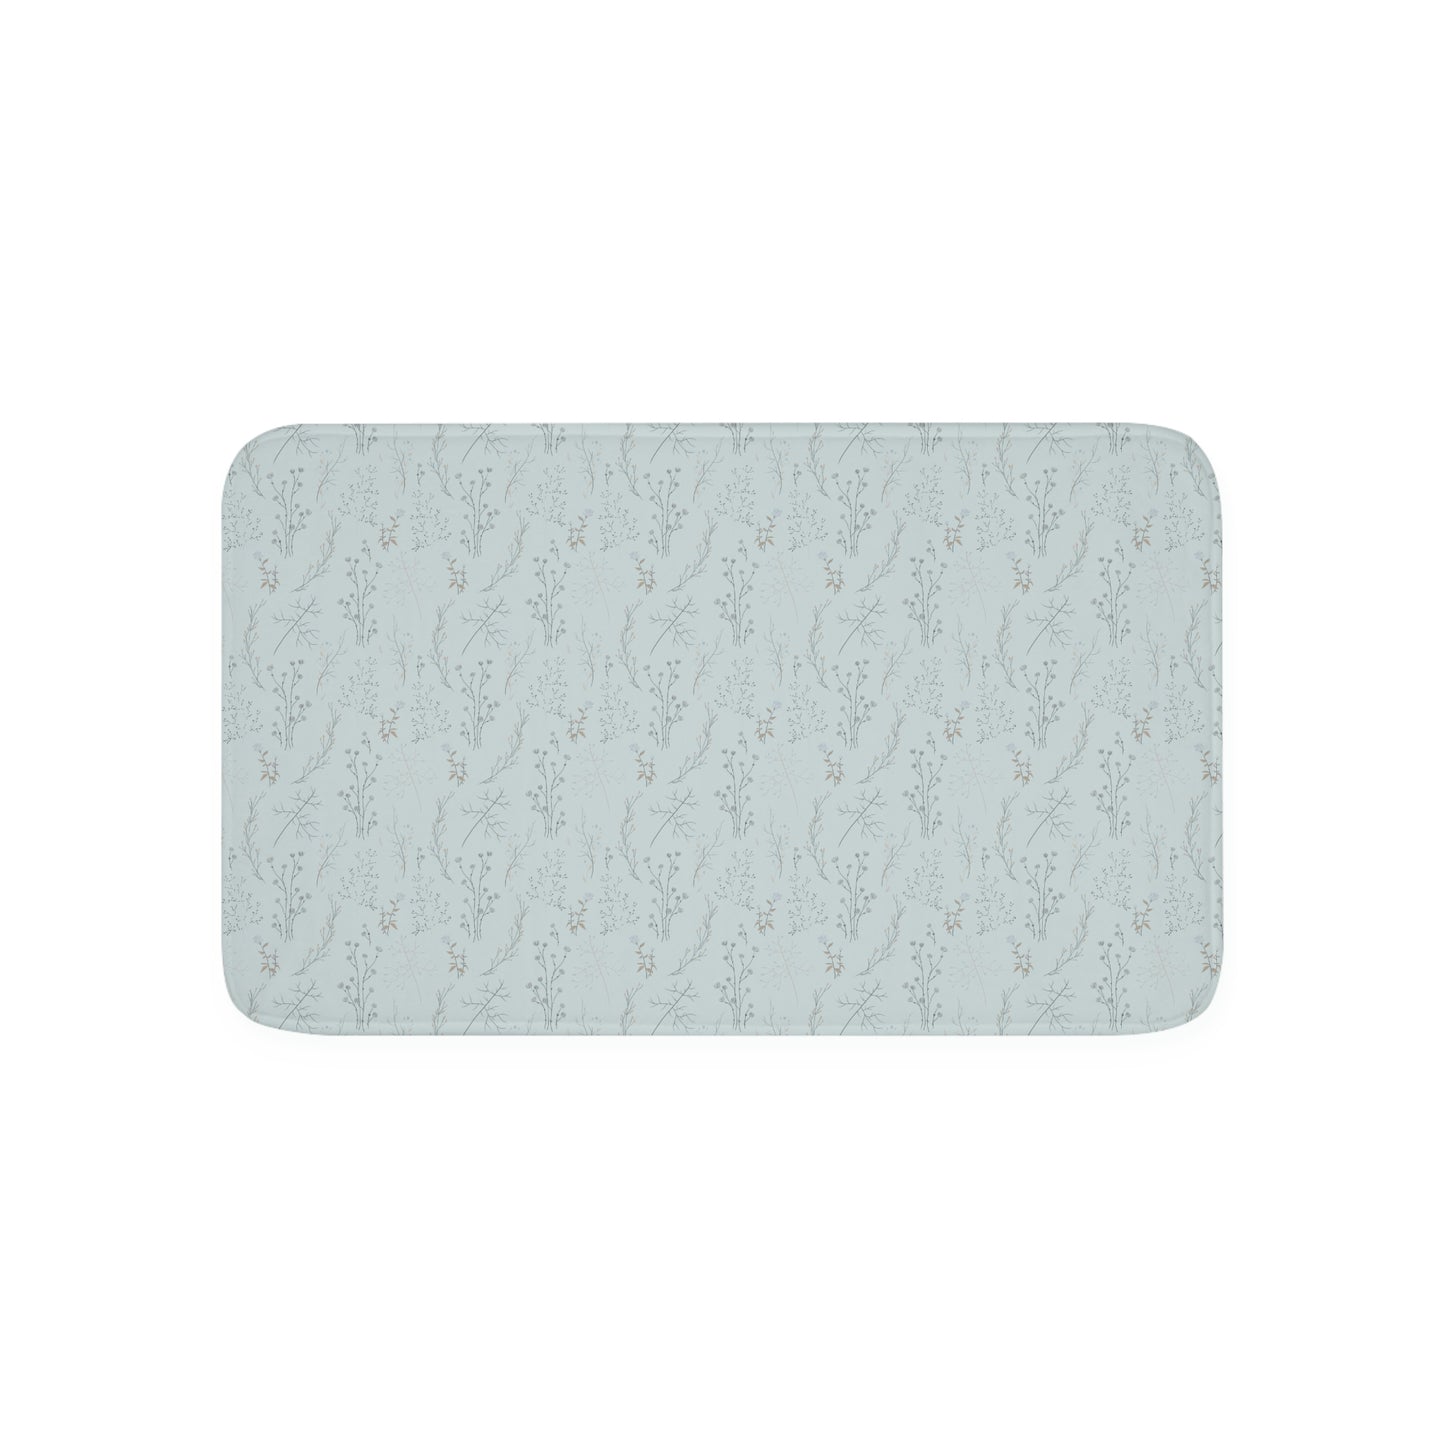 Light Blue Floral Memory Foam Bathmat | 2 Sizes Available